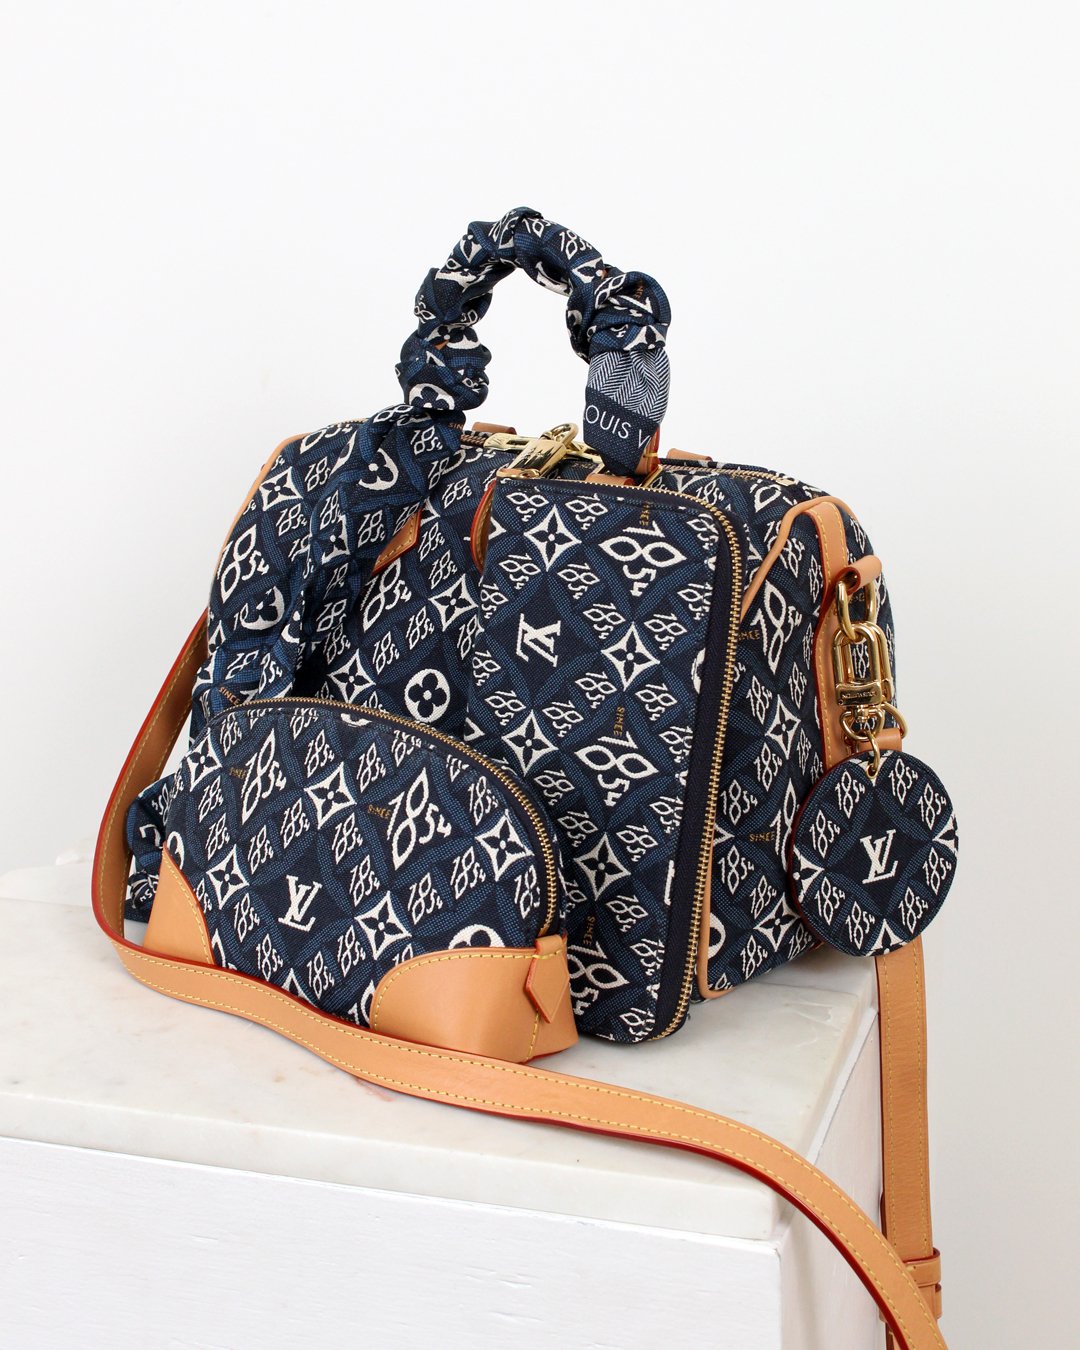 Louis Vuitton Since 1854 Bag Charm Key Holder — Otra Vez Couture